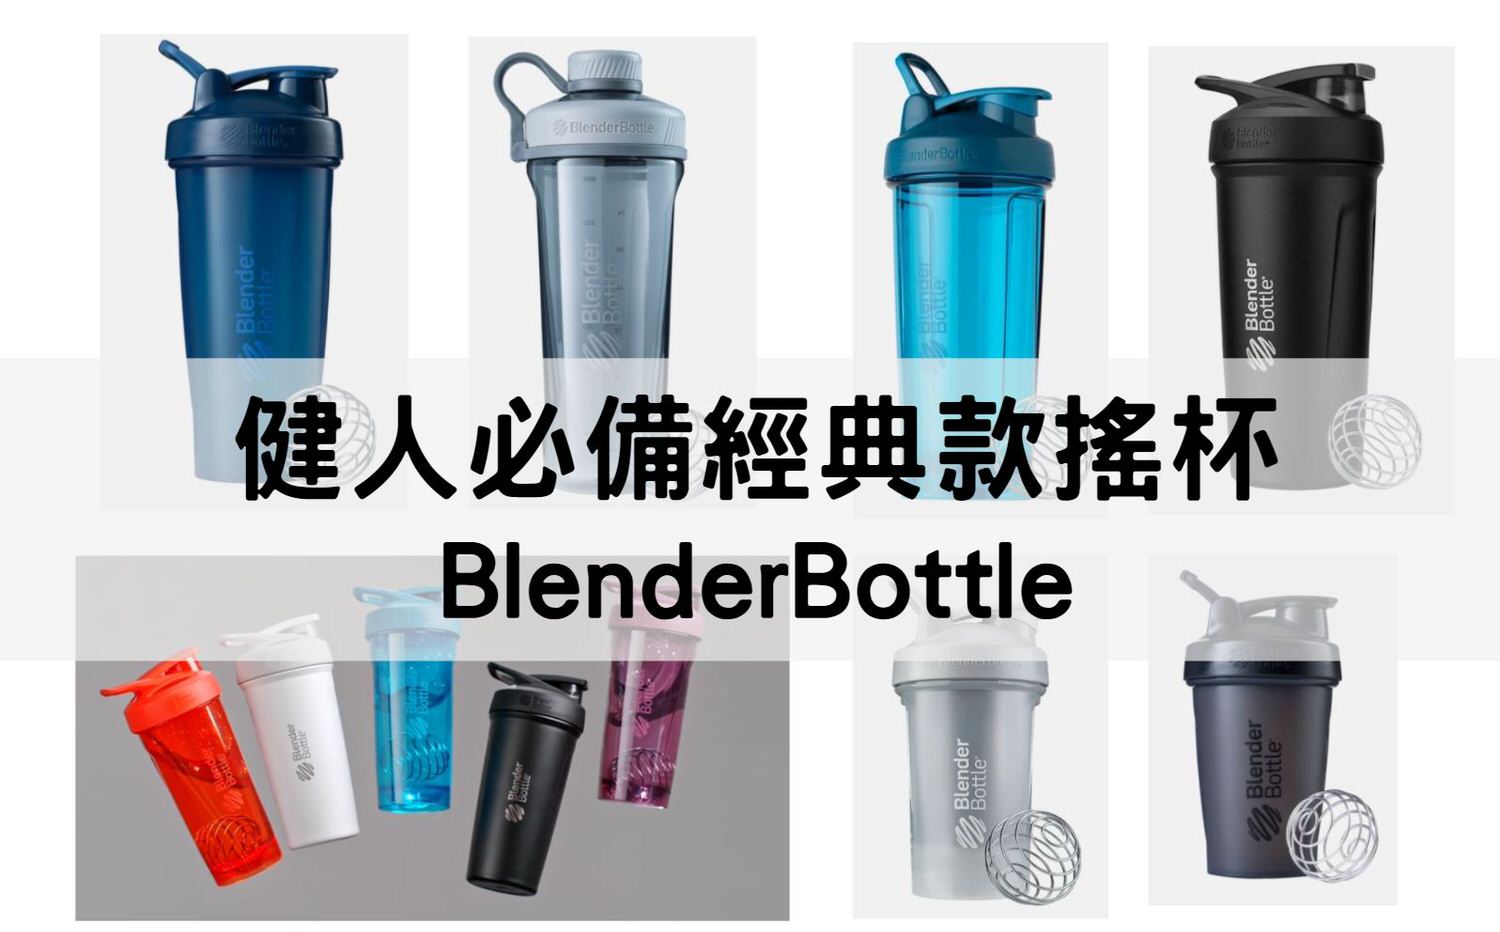 【2022年】7種搖搖杯推薦 BlenderBottle | 材質、容量、特色 |